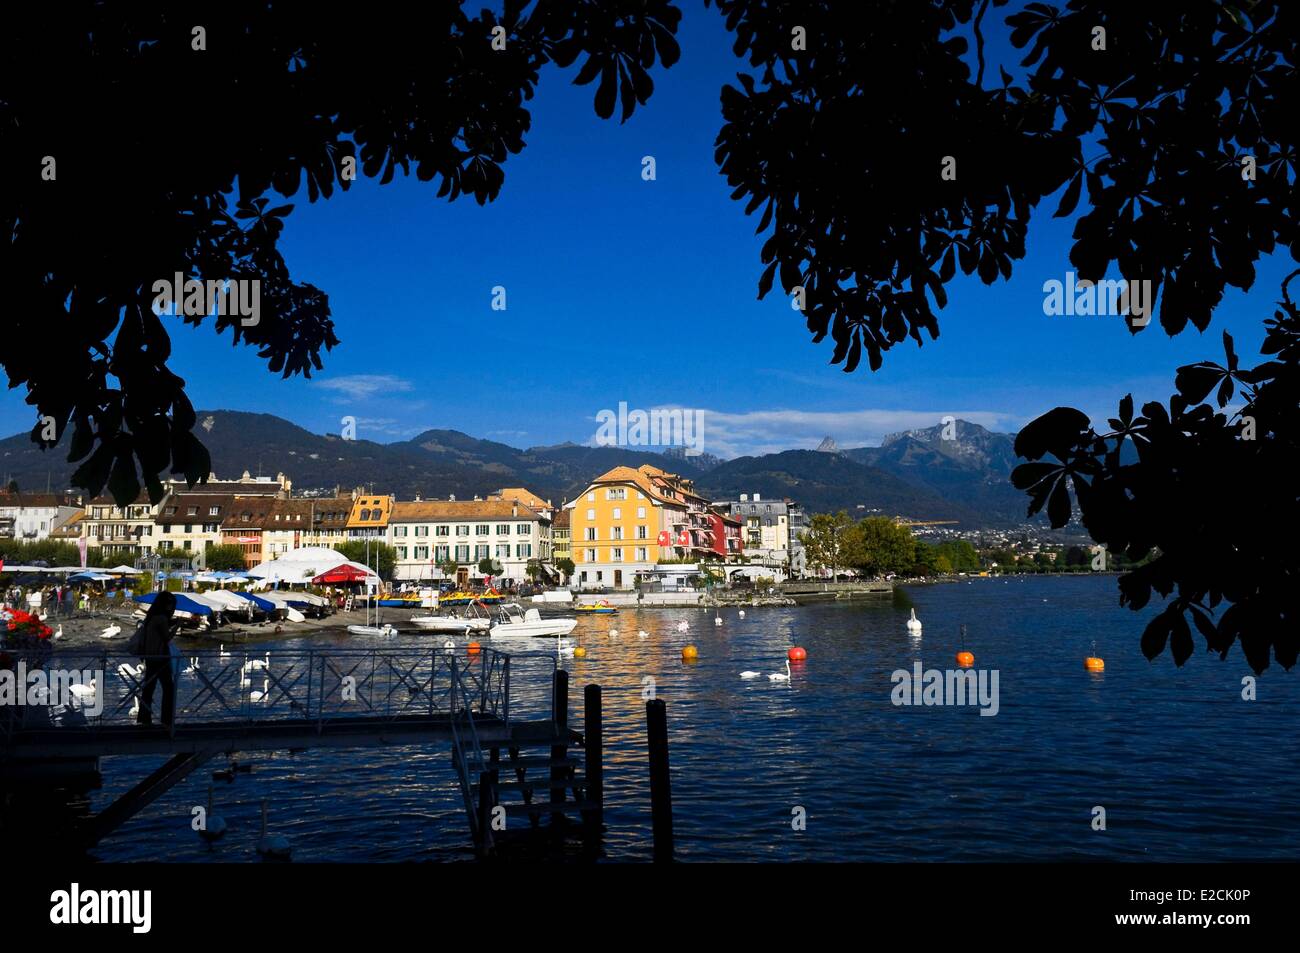 La Svizzera, nel Cantone di Vaud, Vevey, ottimo posto sul Lago di Ginevra Foto Stock